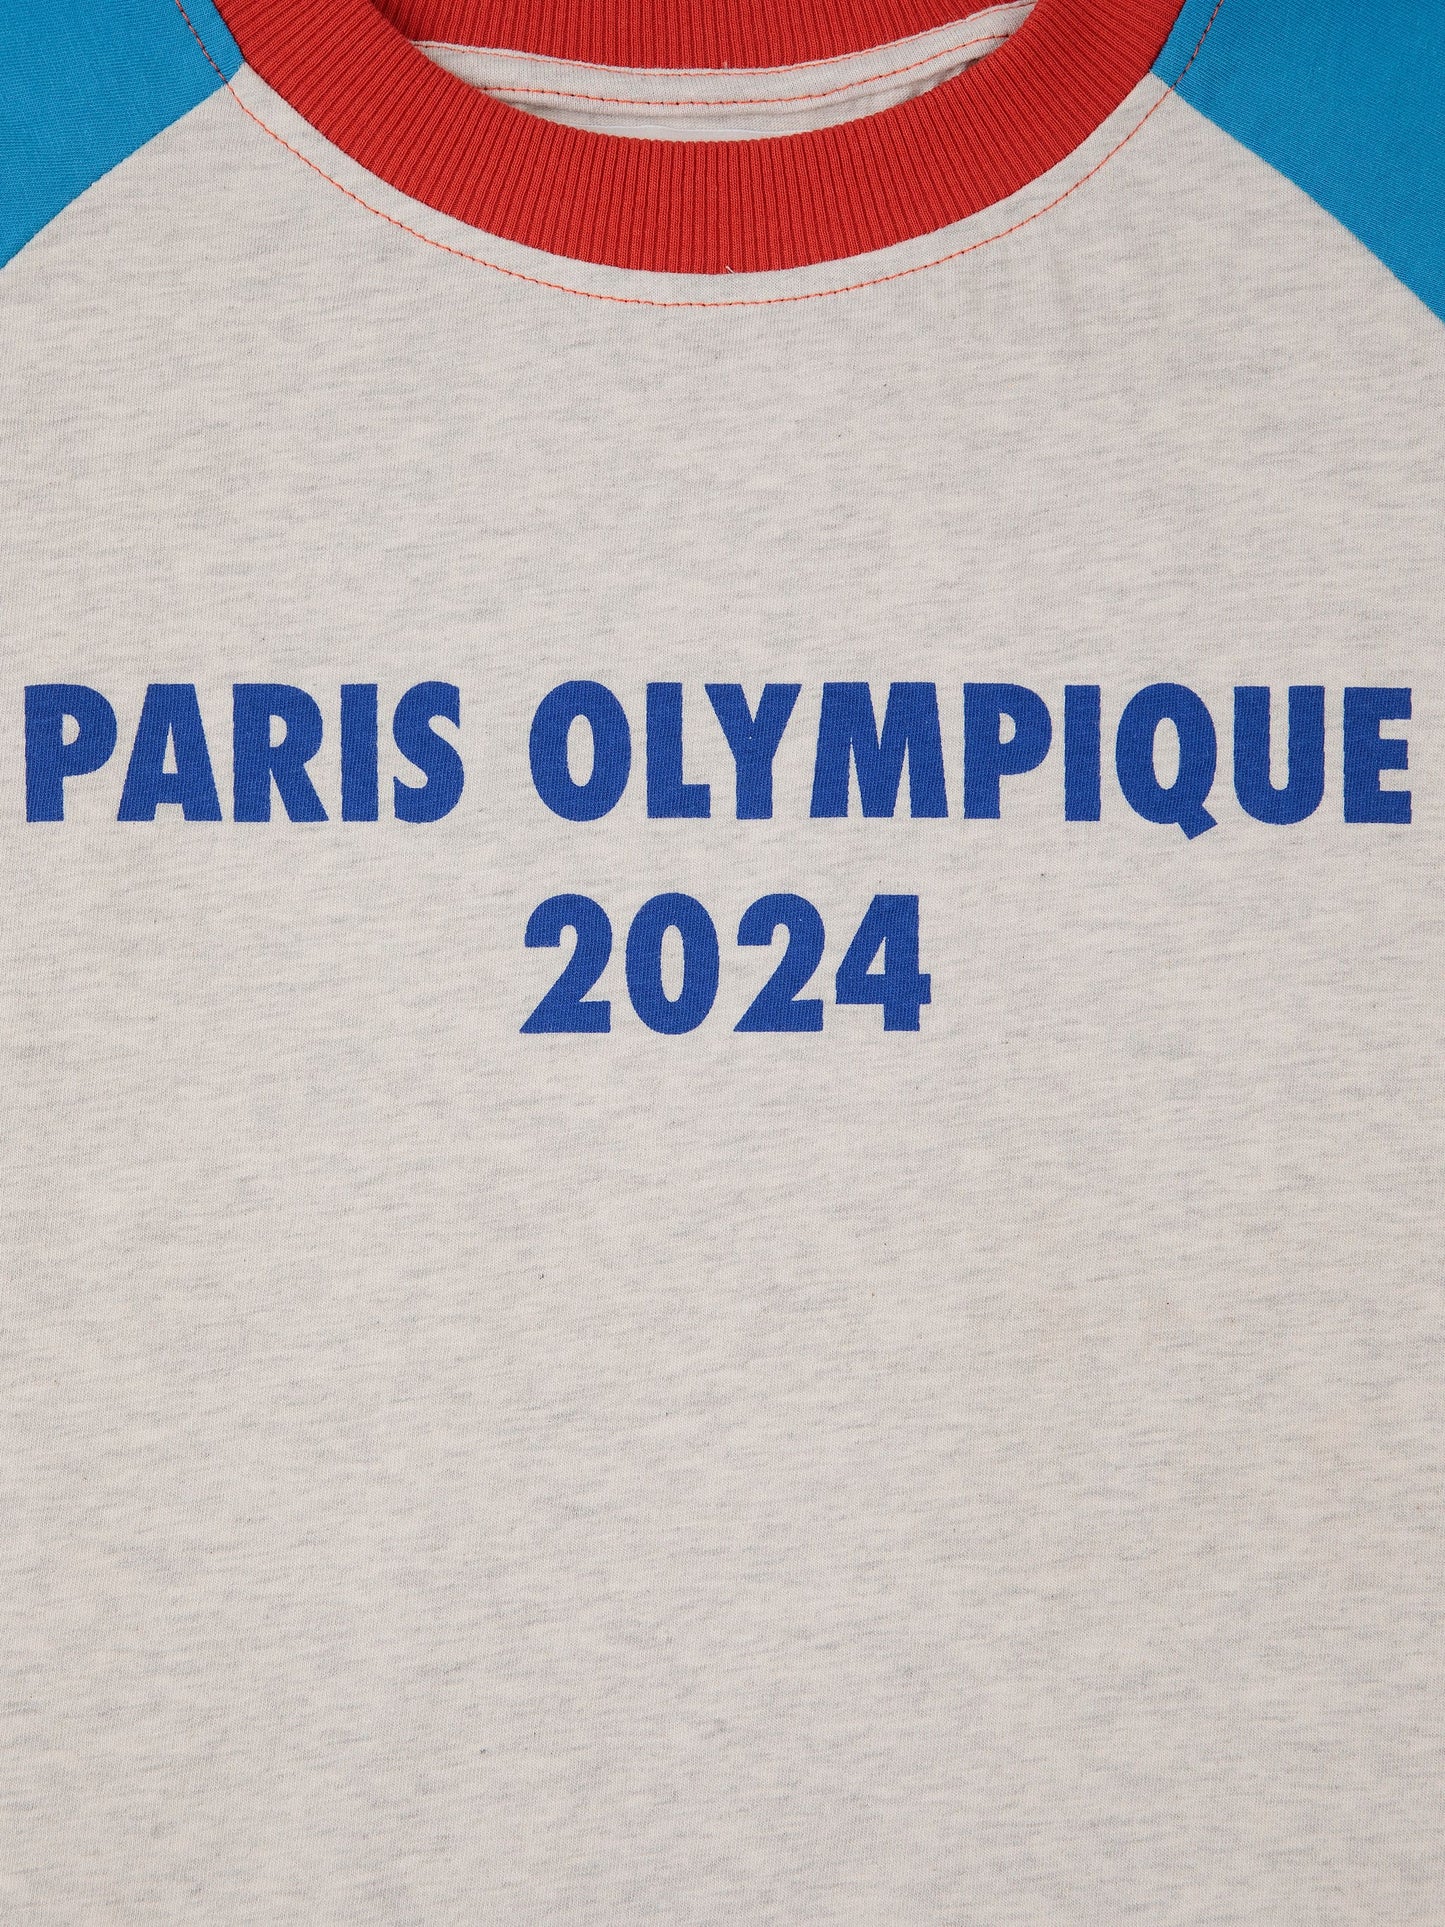 파리 올림픽 티셔츠